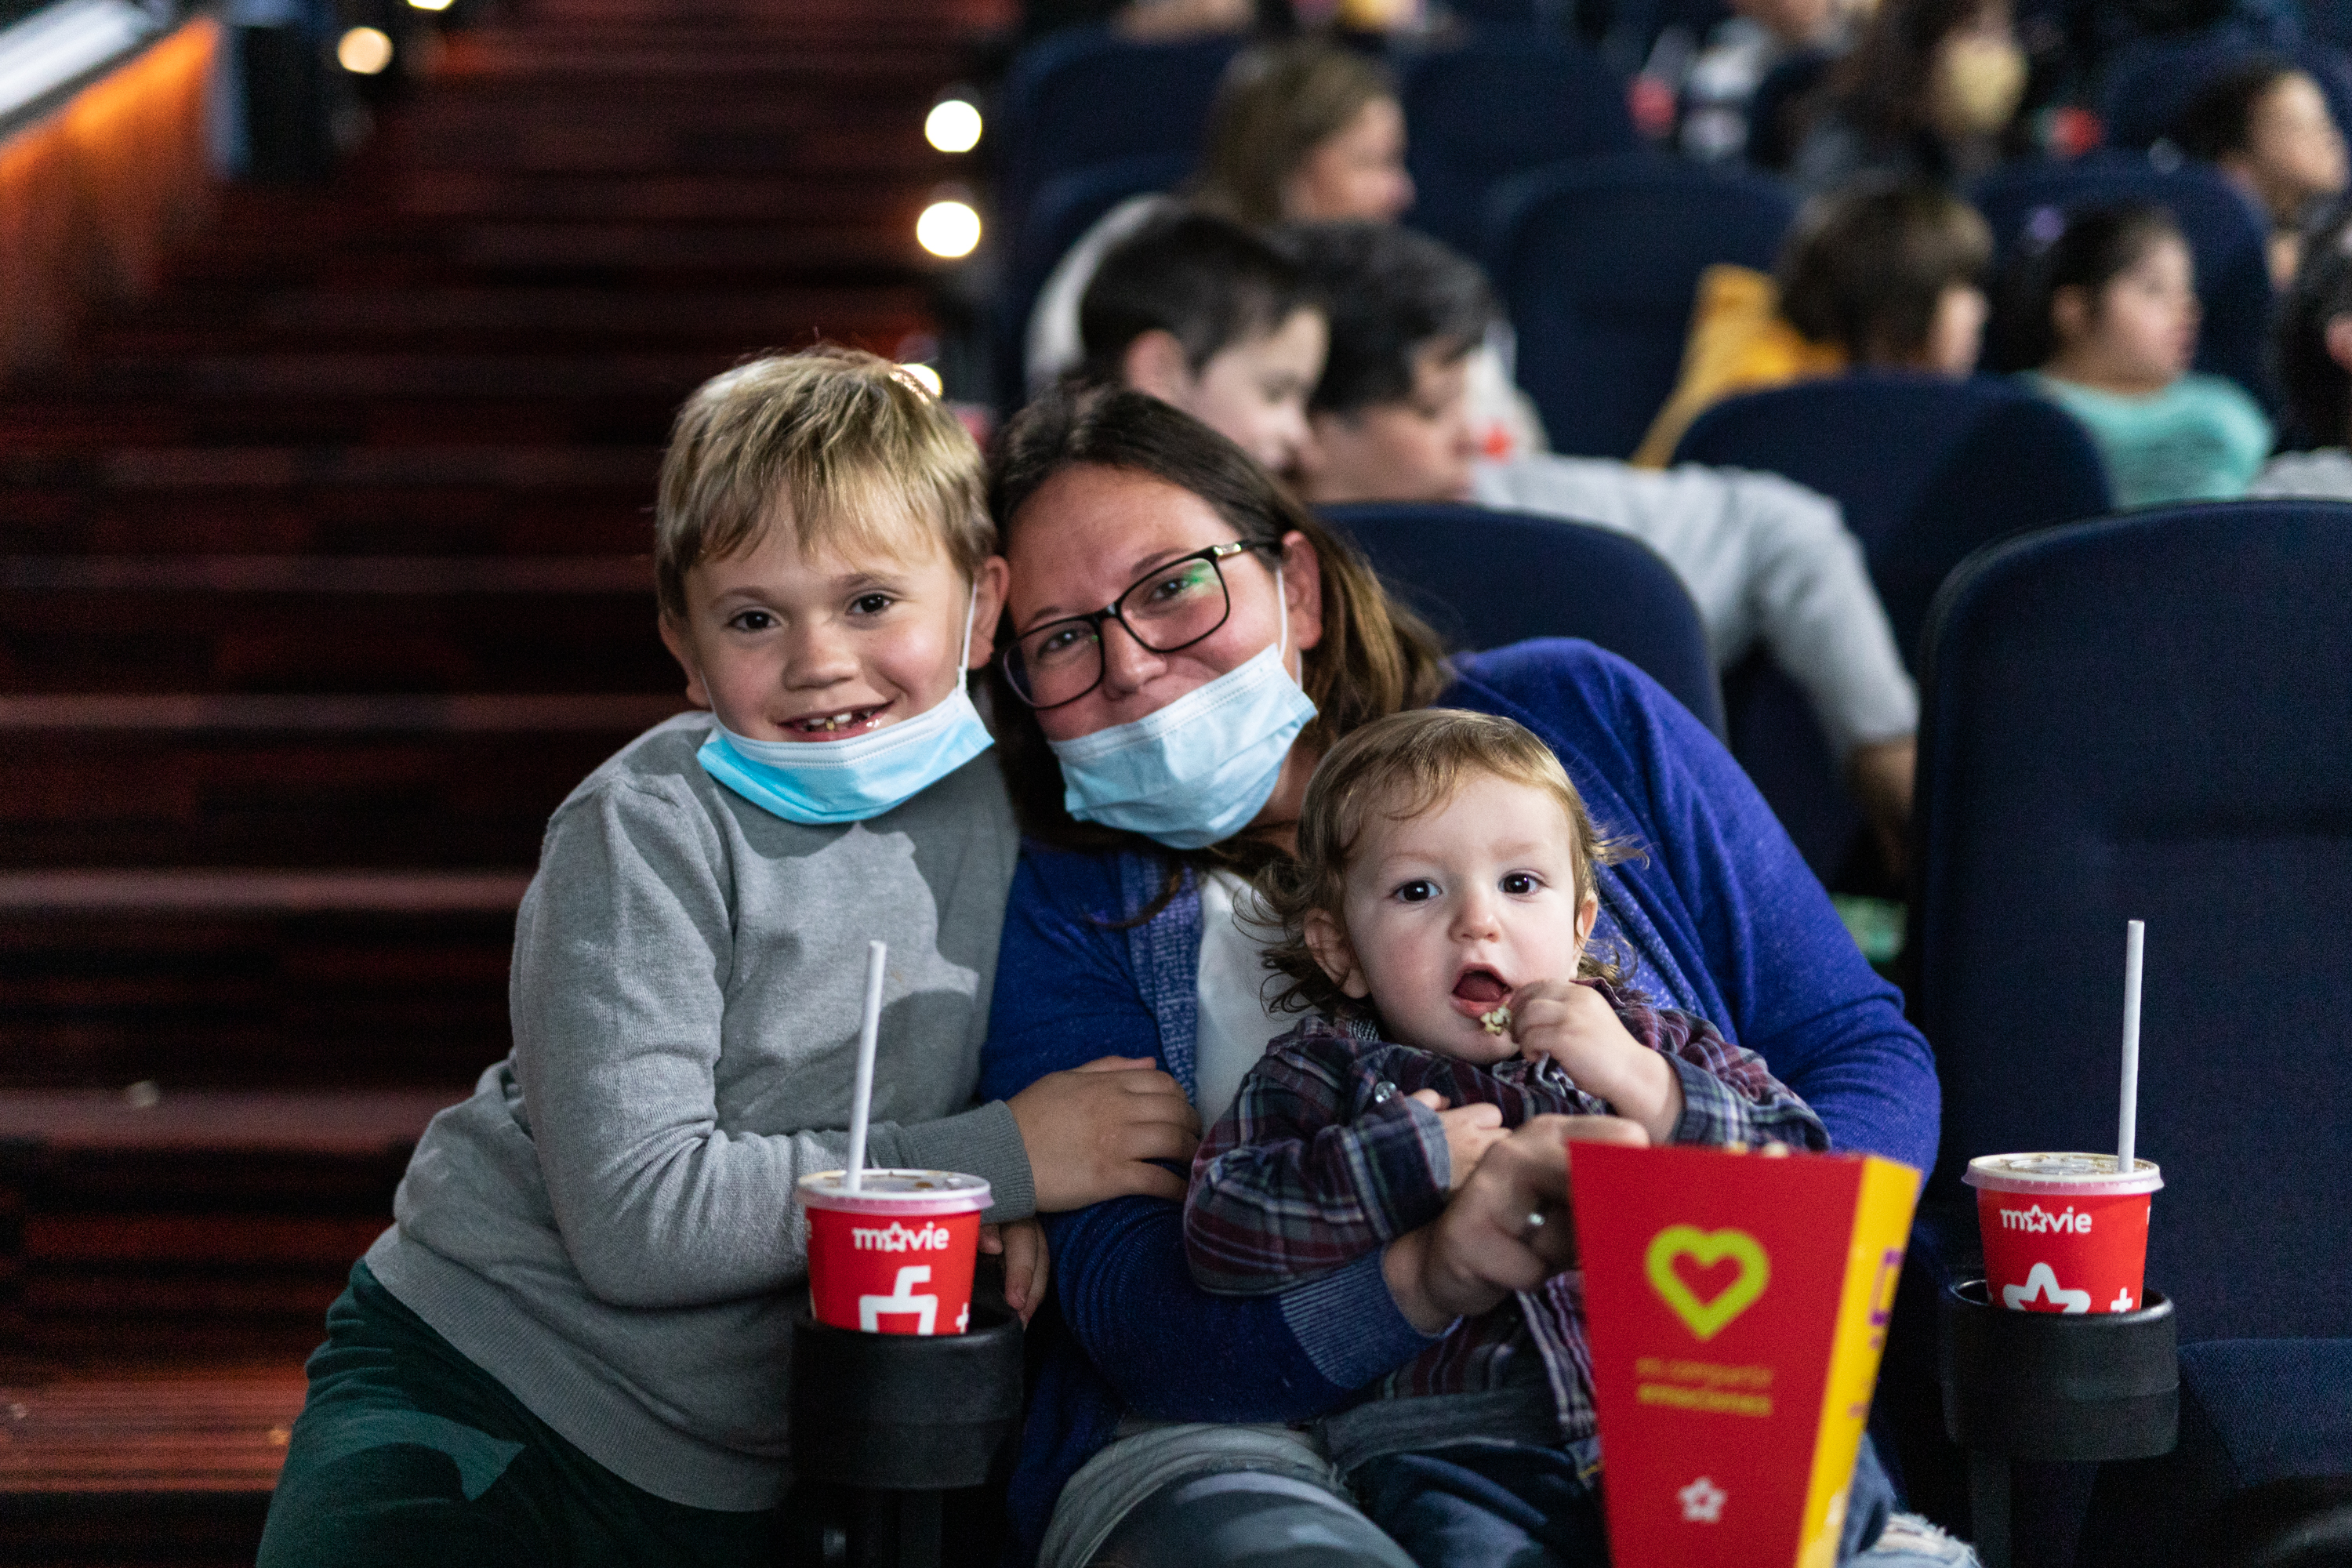 Dentro del cine, una madre disfruta de la película junto a sus dos hijos.